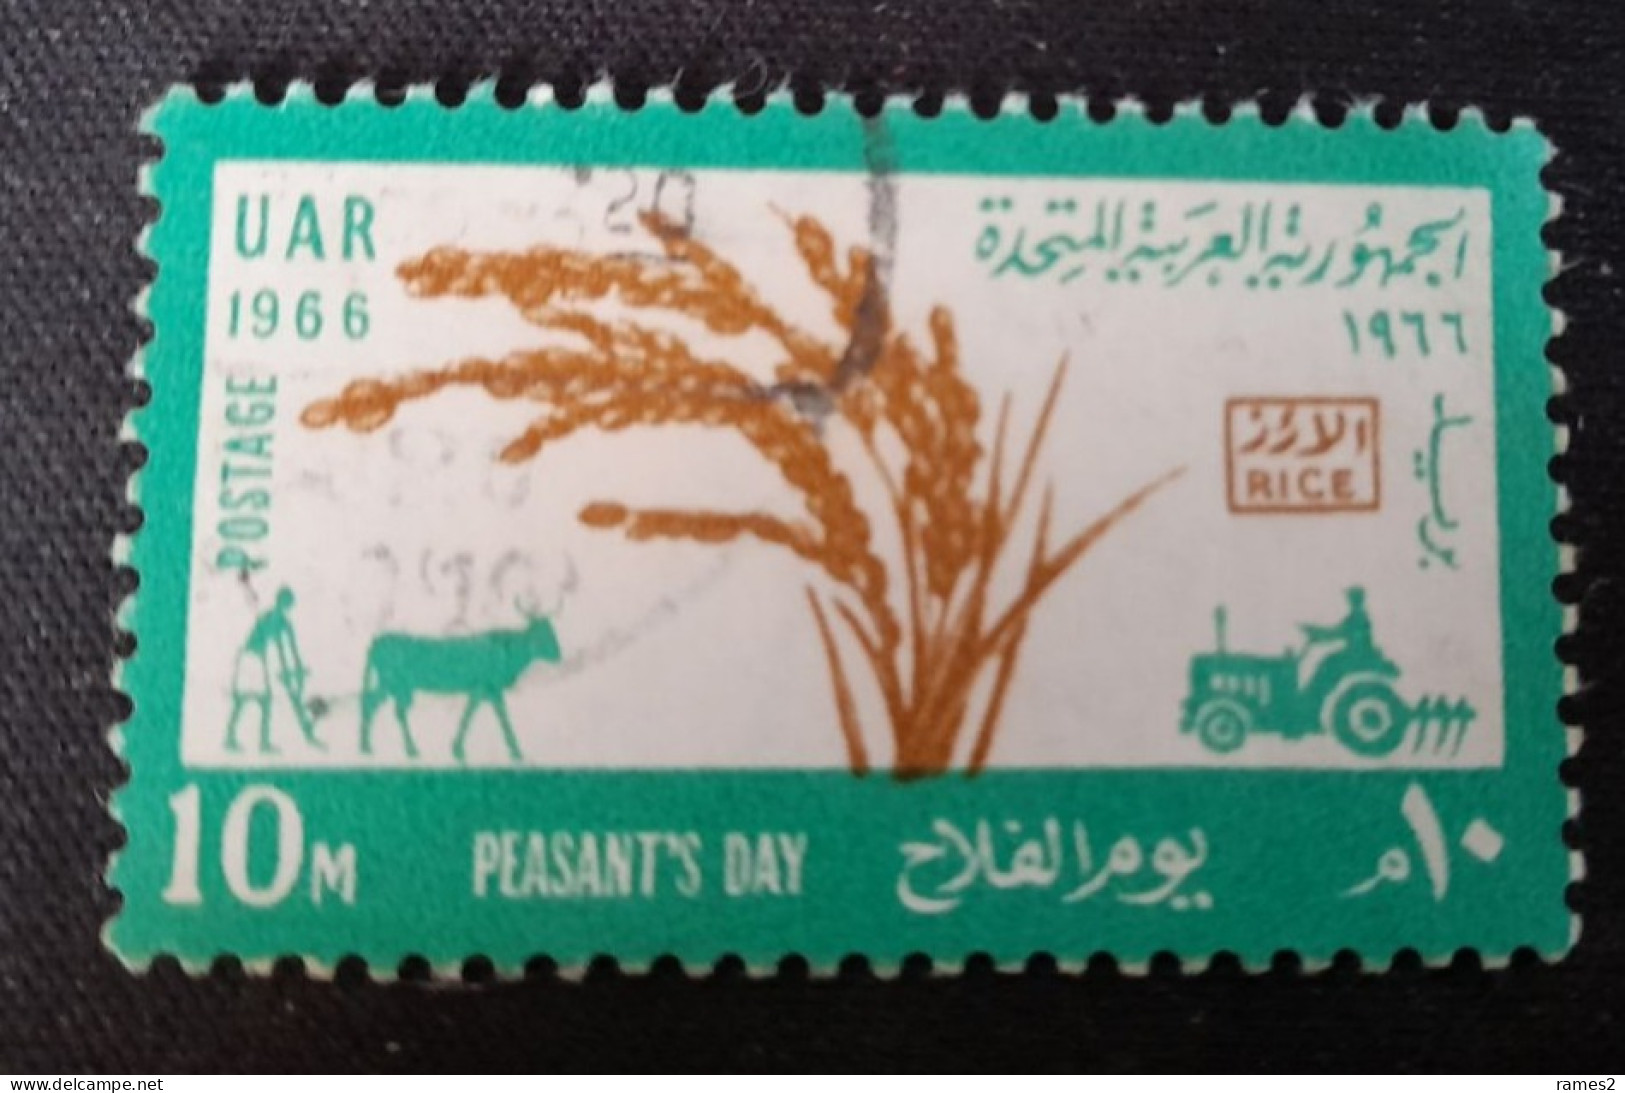 Egypte > 1953-... République > 1960-69 >Oblitérés N°684 - Used Stamps